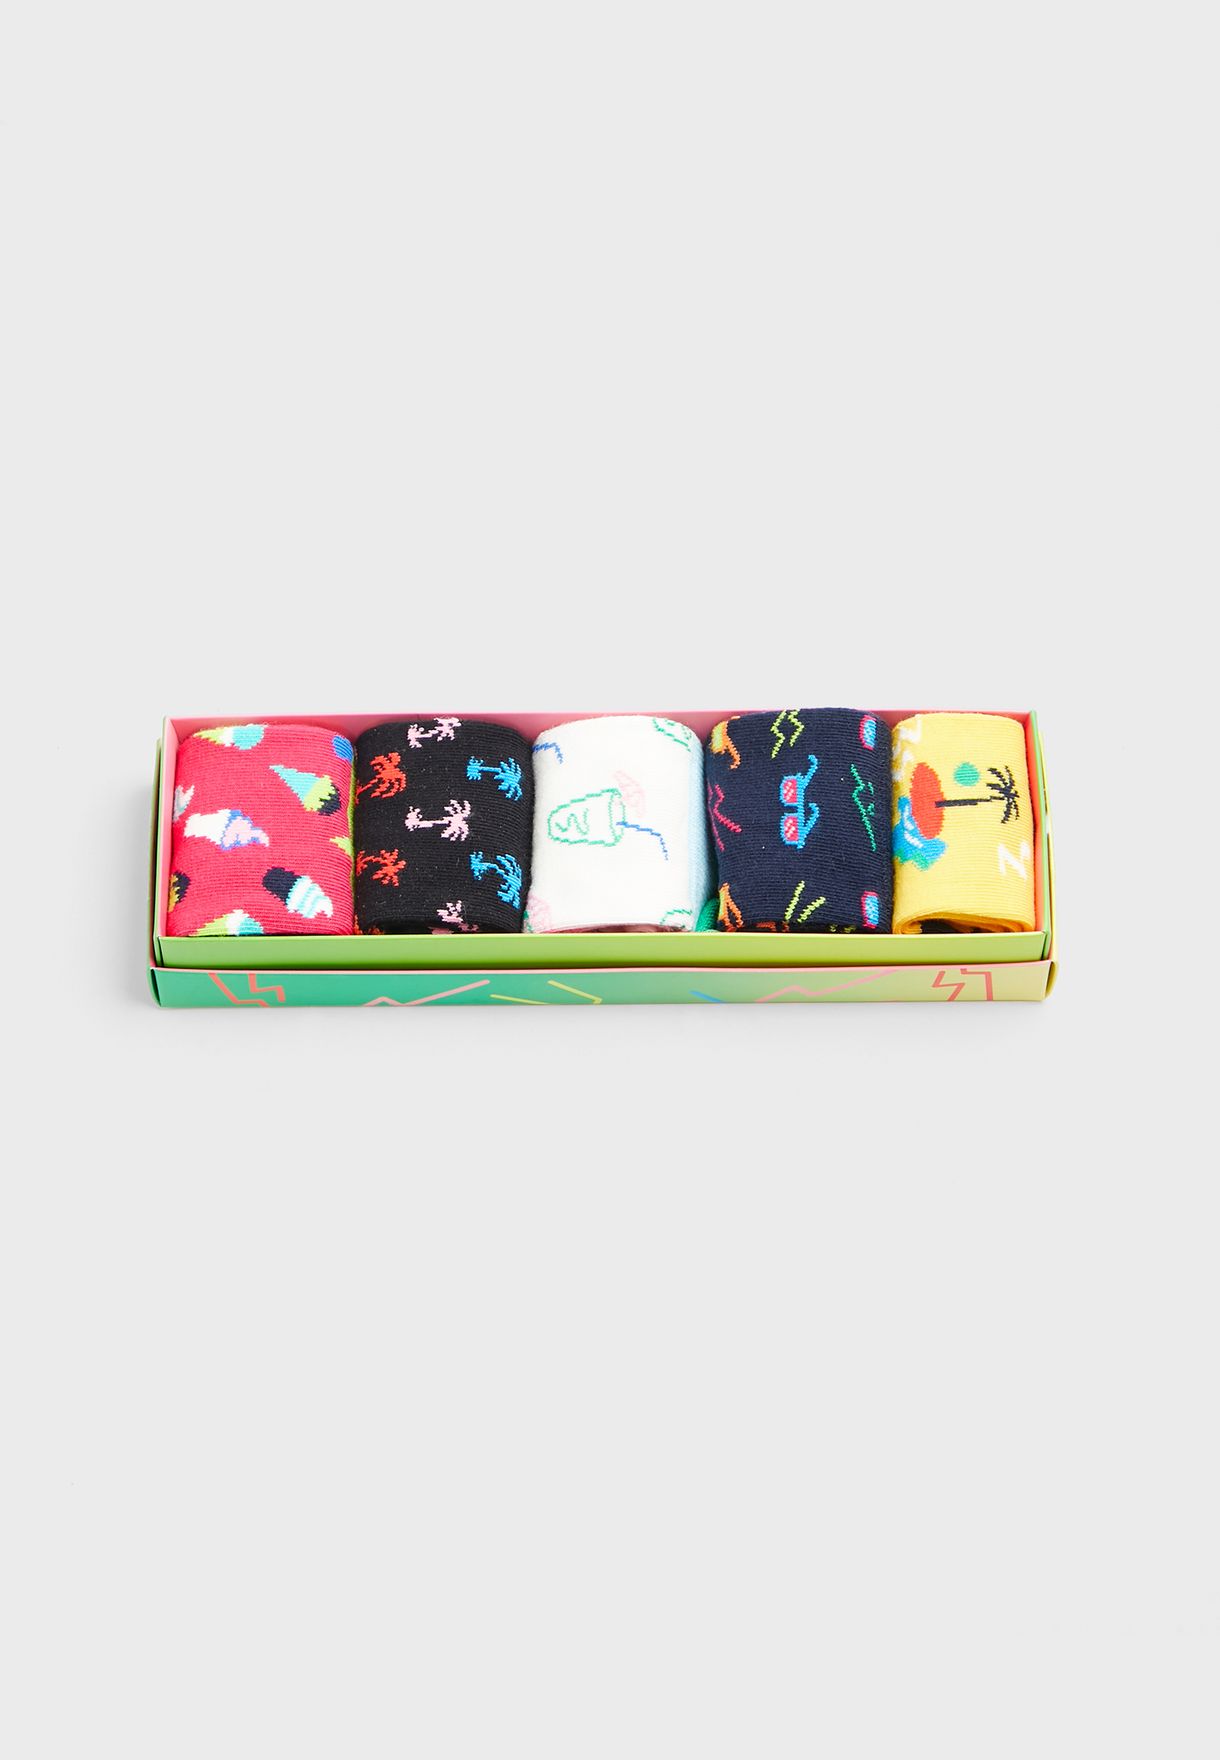 Kids 5 Pack Tropical Socks Gift Set